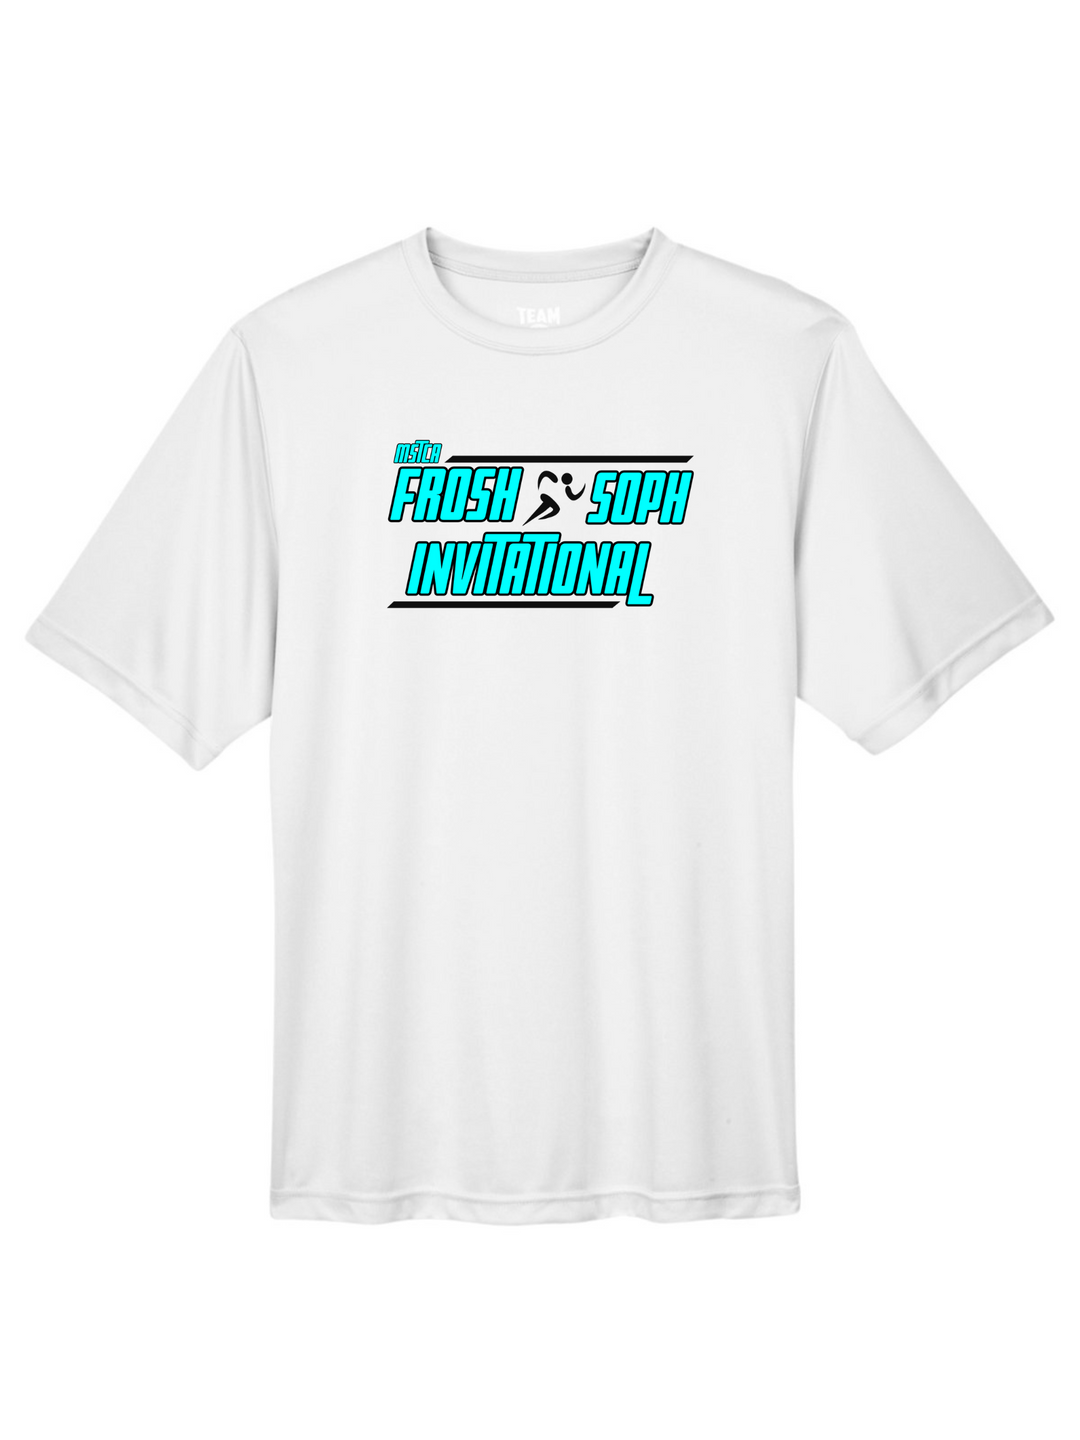 MSTCA William Kane Frosh/Soph Invite - Men's Performance T-Shirt (TT11)